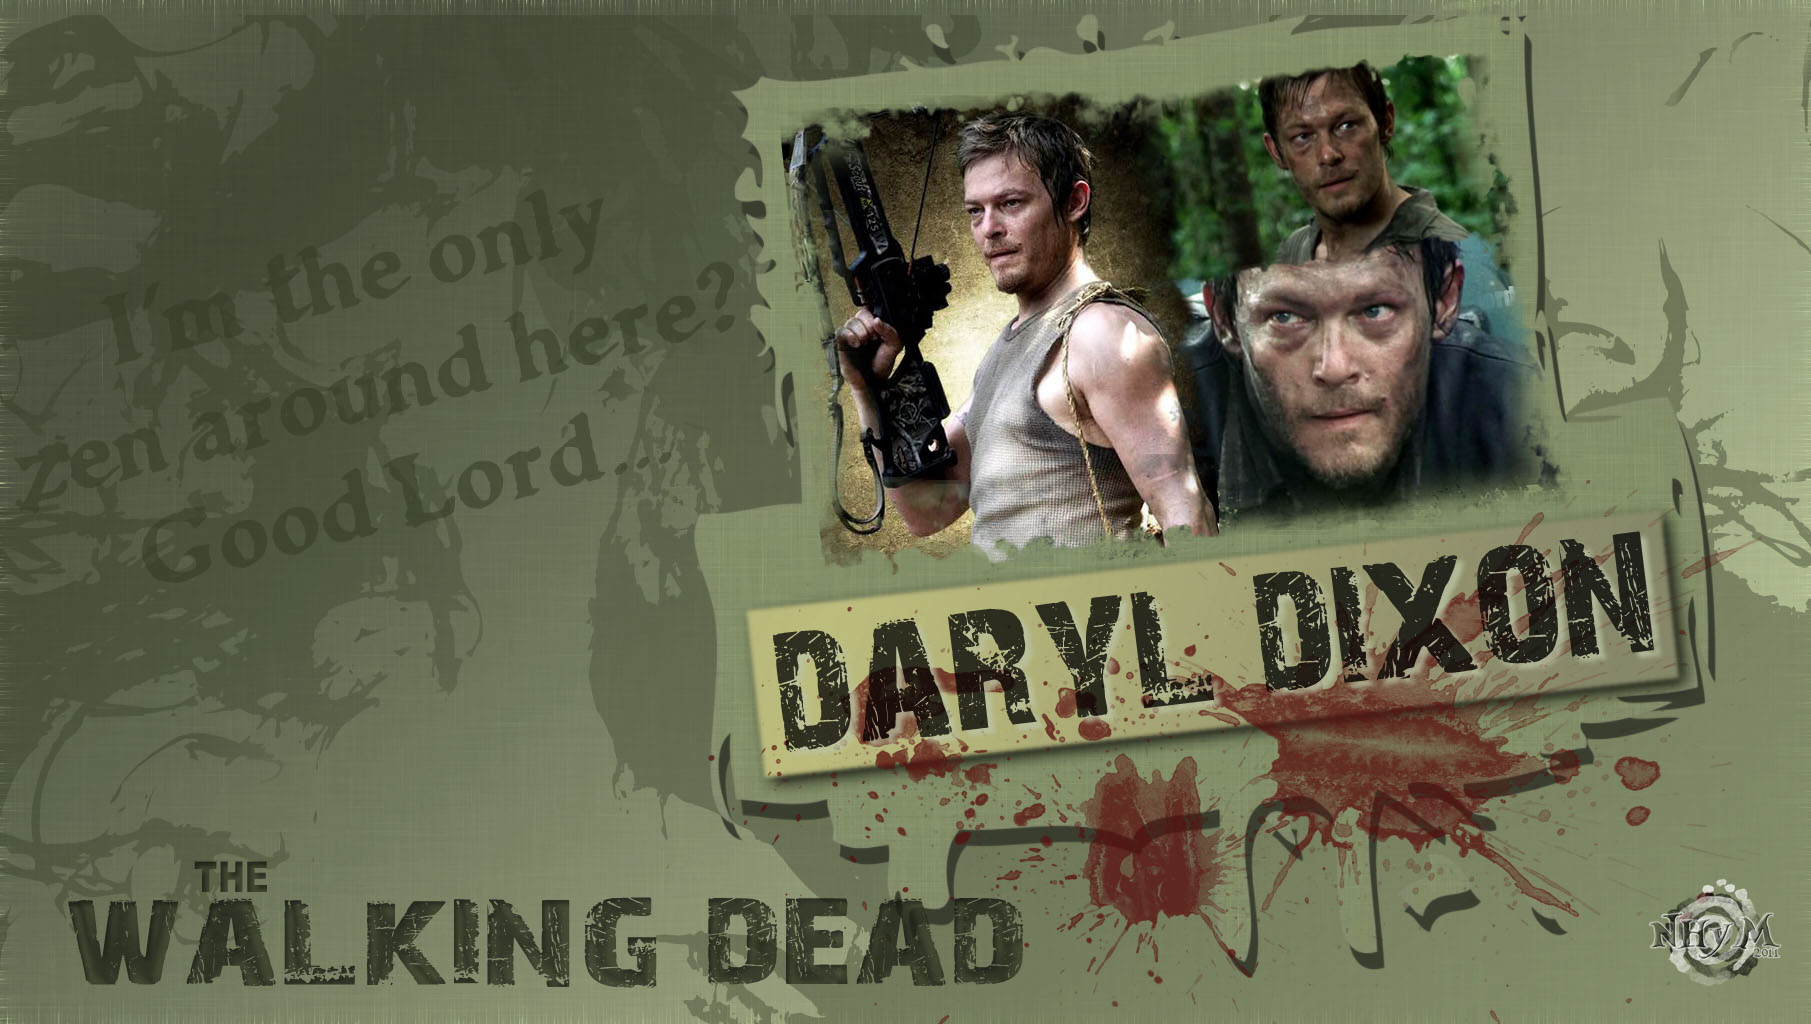 Descarga gratuita de fondo de pantalla para móvil de Series De Televisión, The Walking Dead, Daryl Dixon.